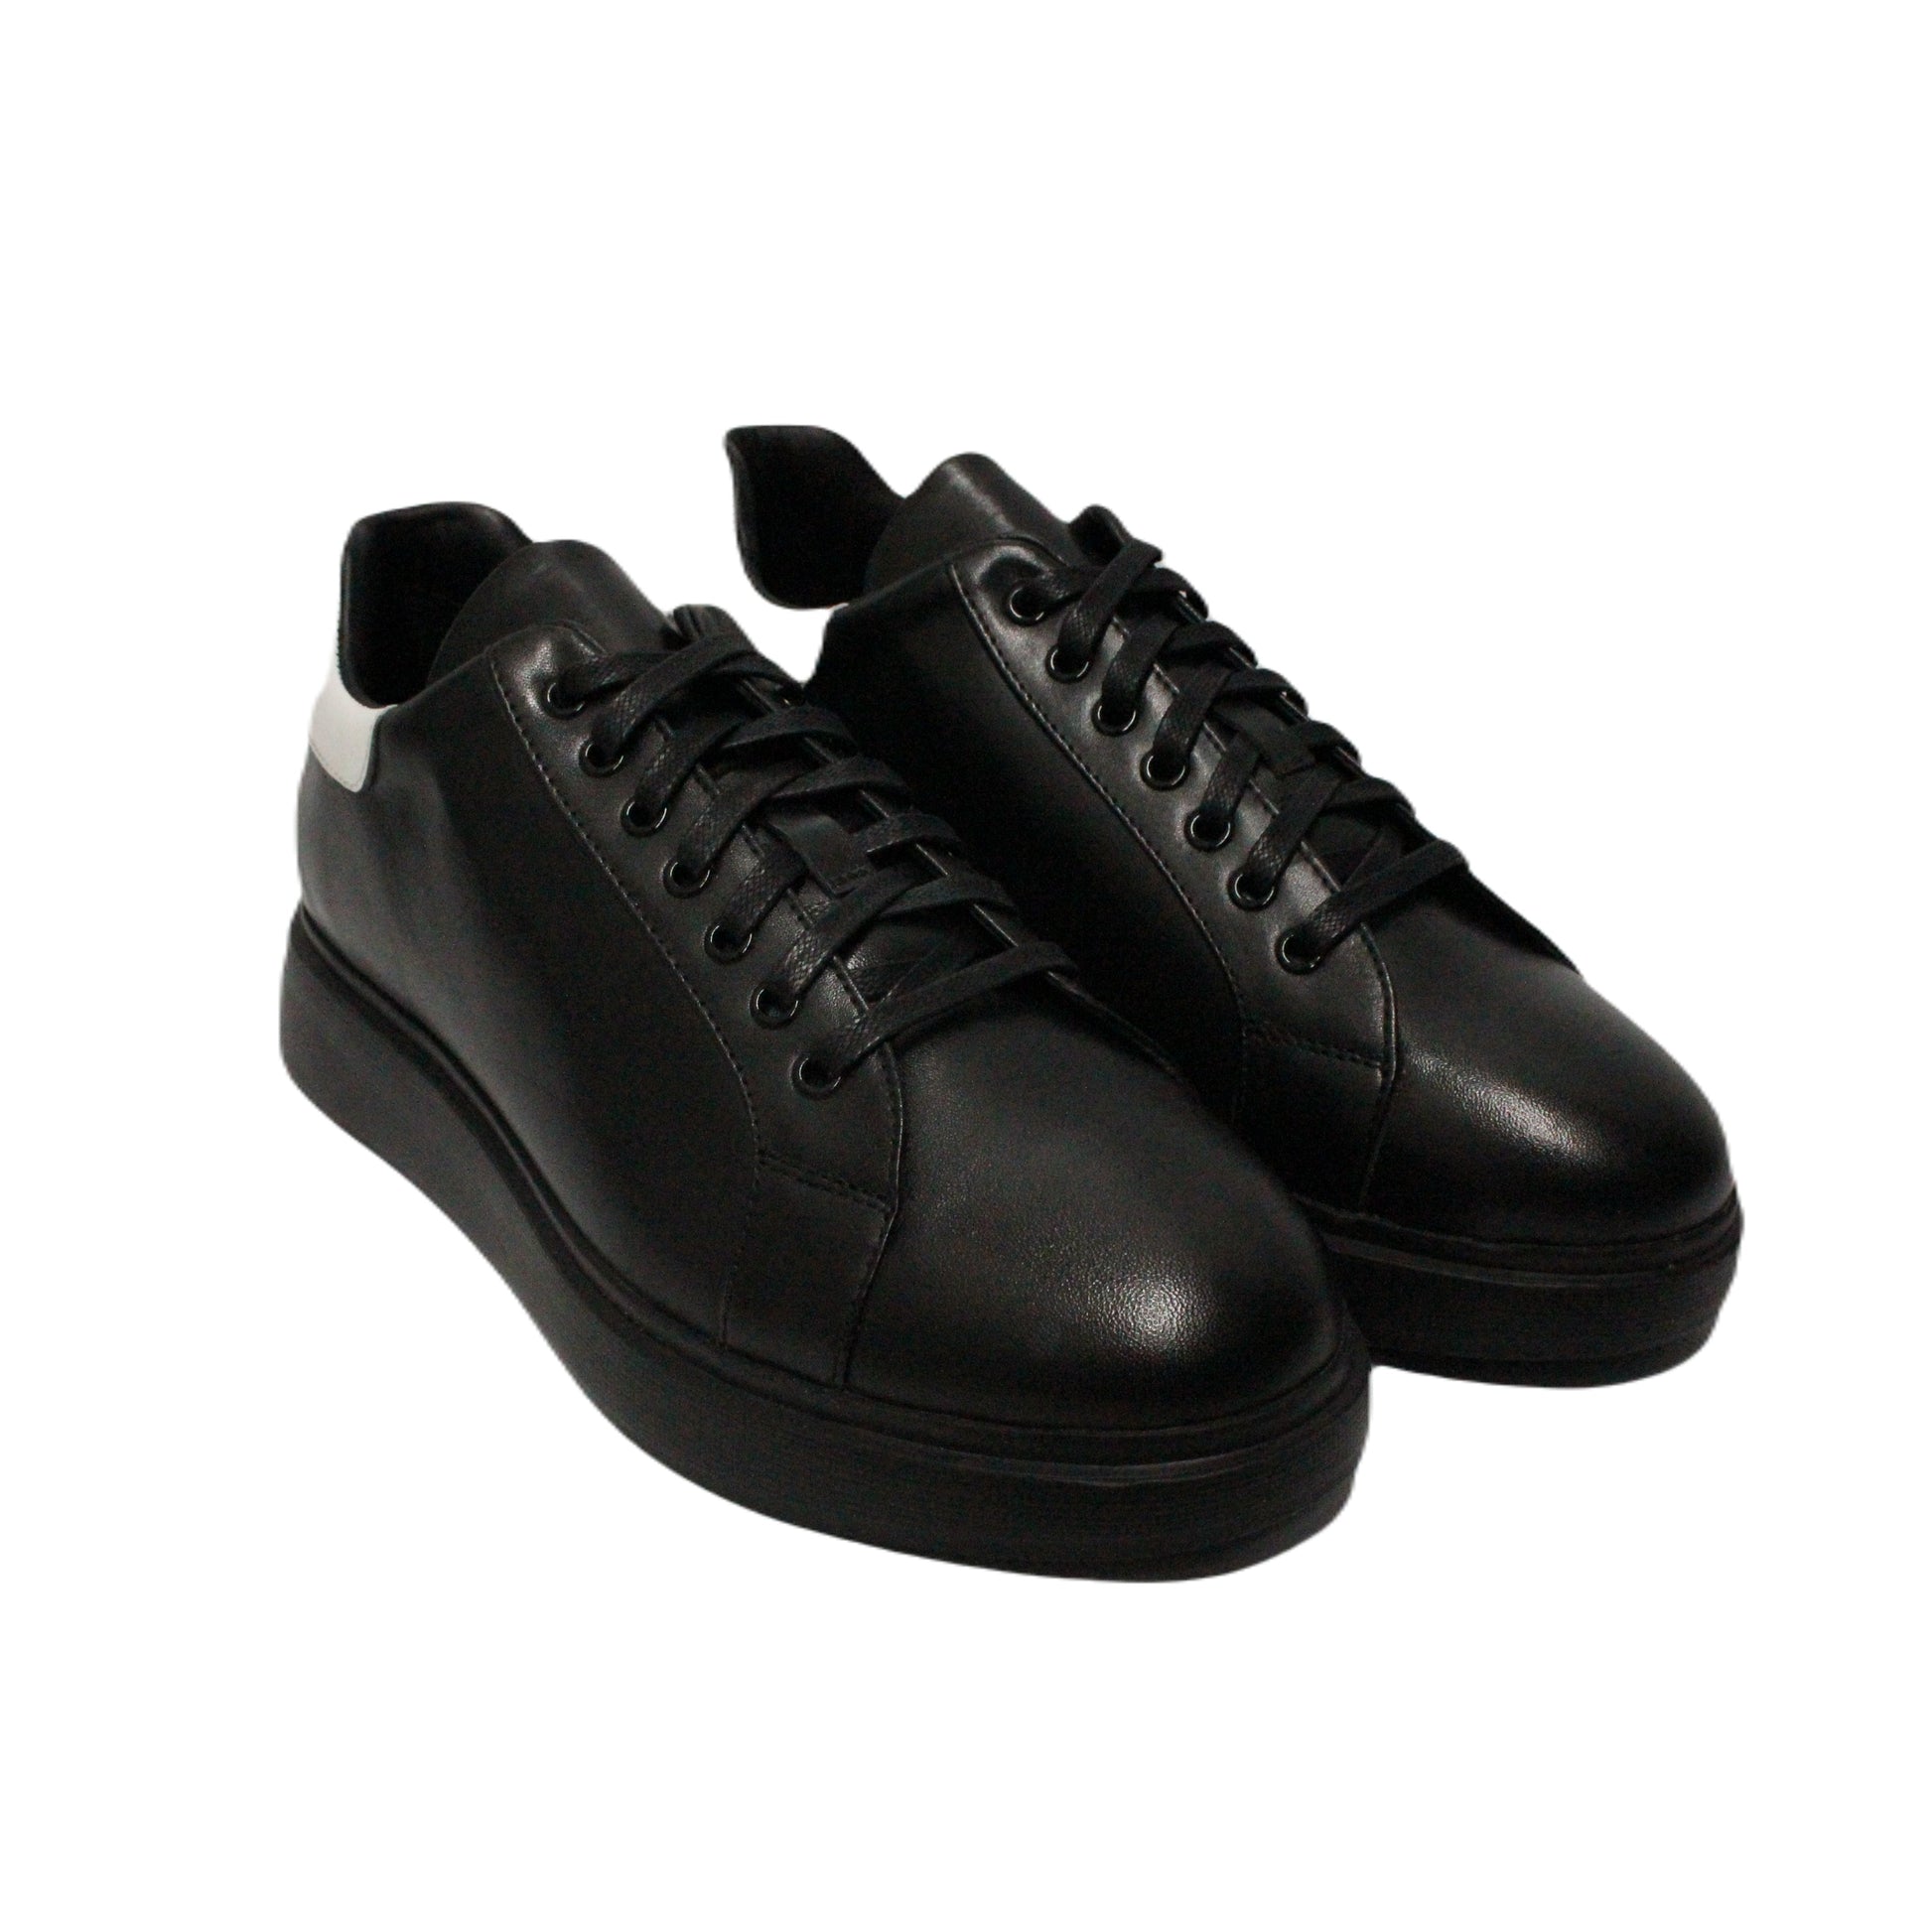 Vito Oliva Analin Shoes - Black/White - Escape Menswear